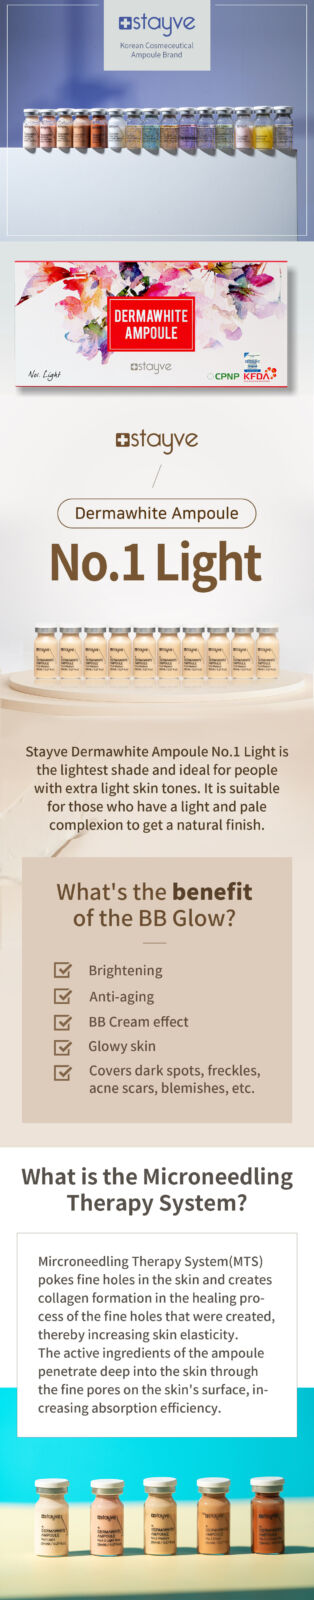 Stayve Dermawhite BB Glow Ampoule No.1 Light 2